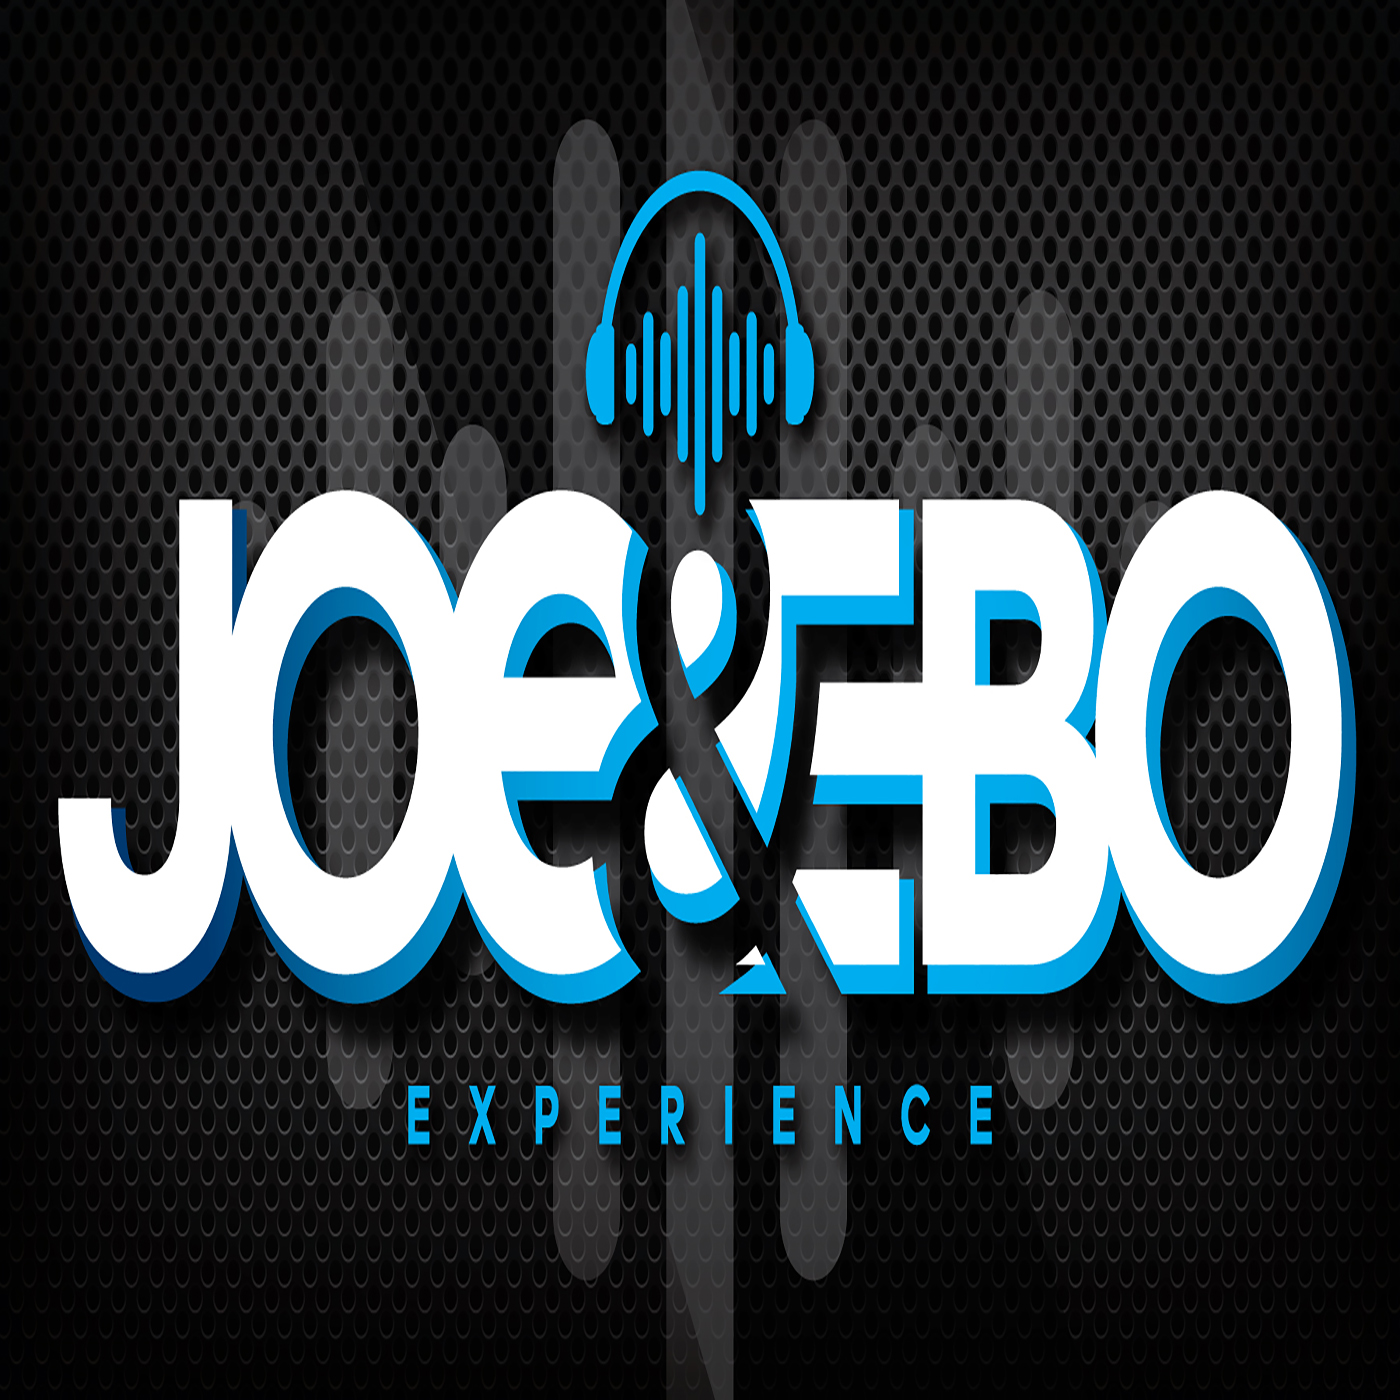 Joe & Ebo Experience: 100 Days